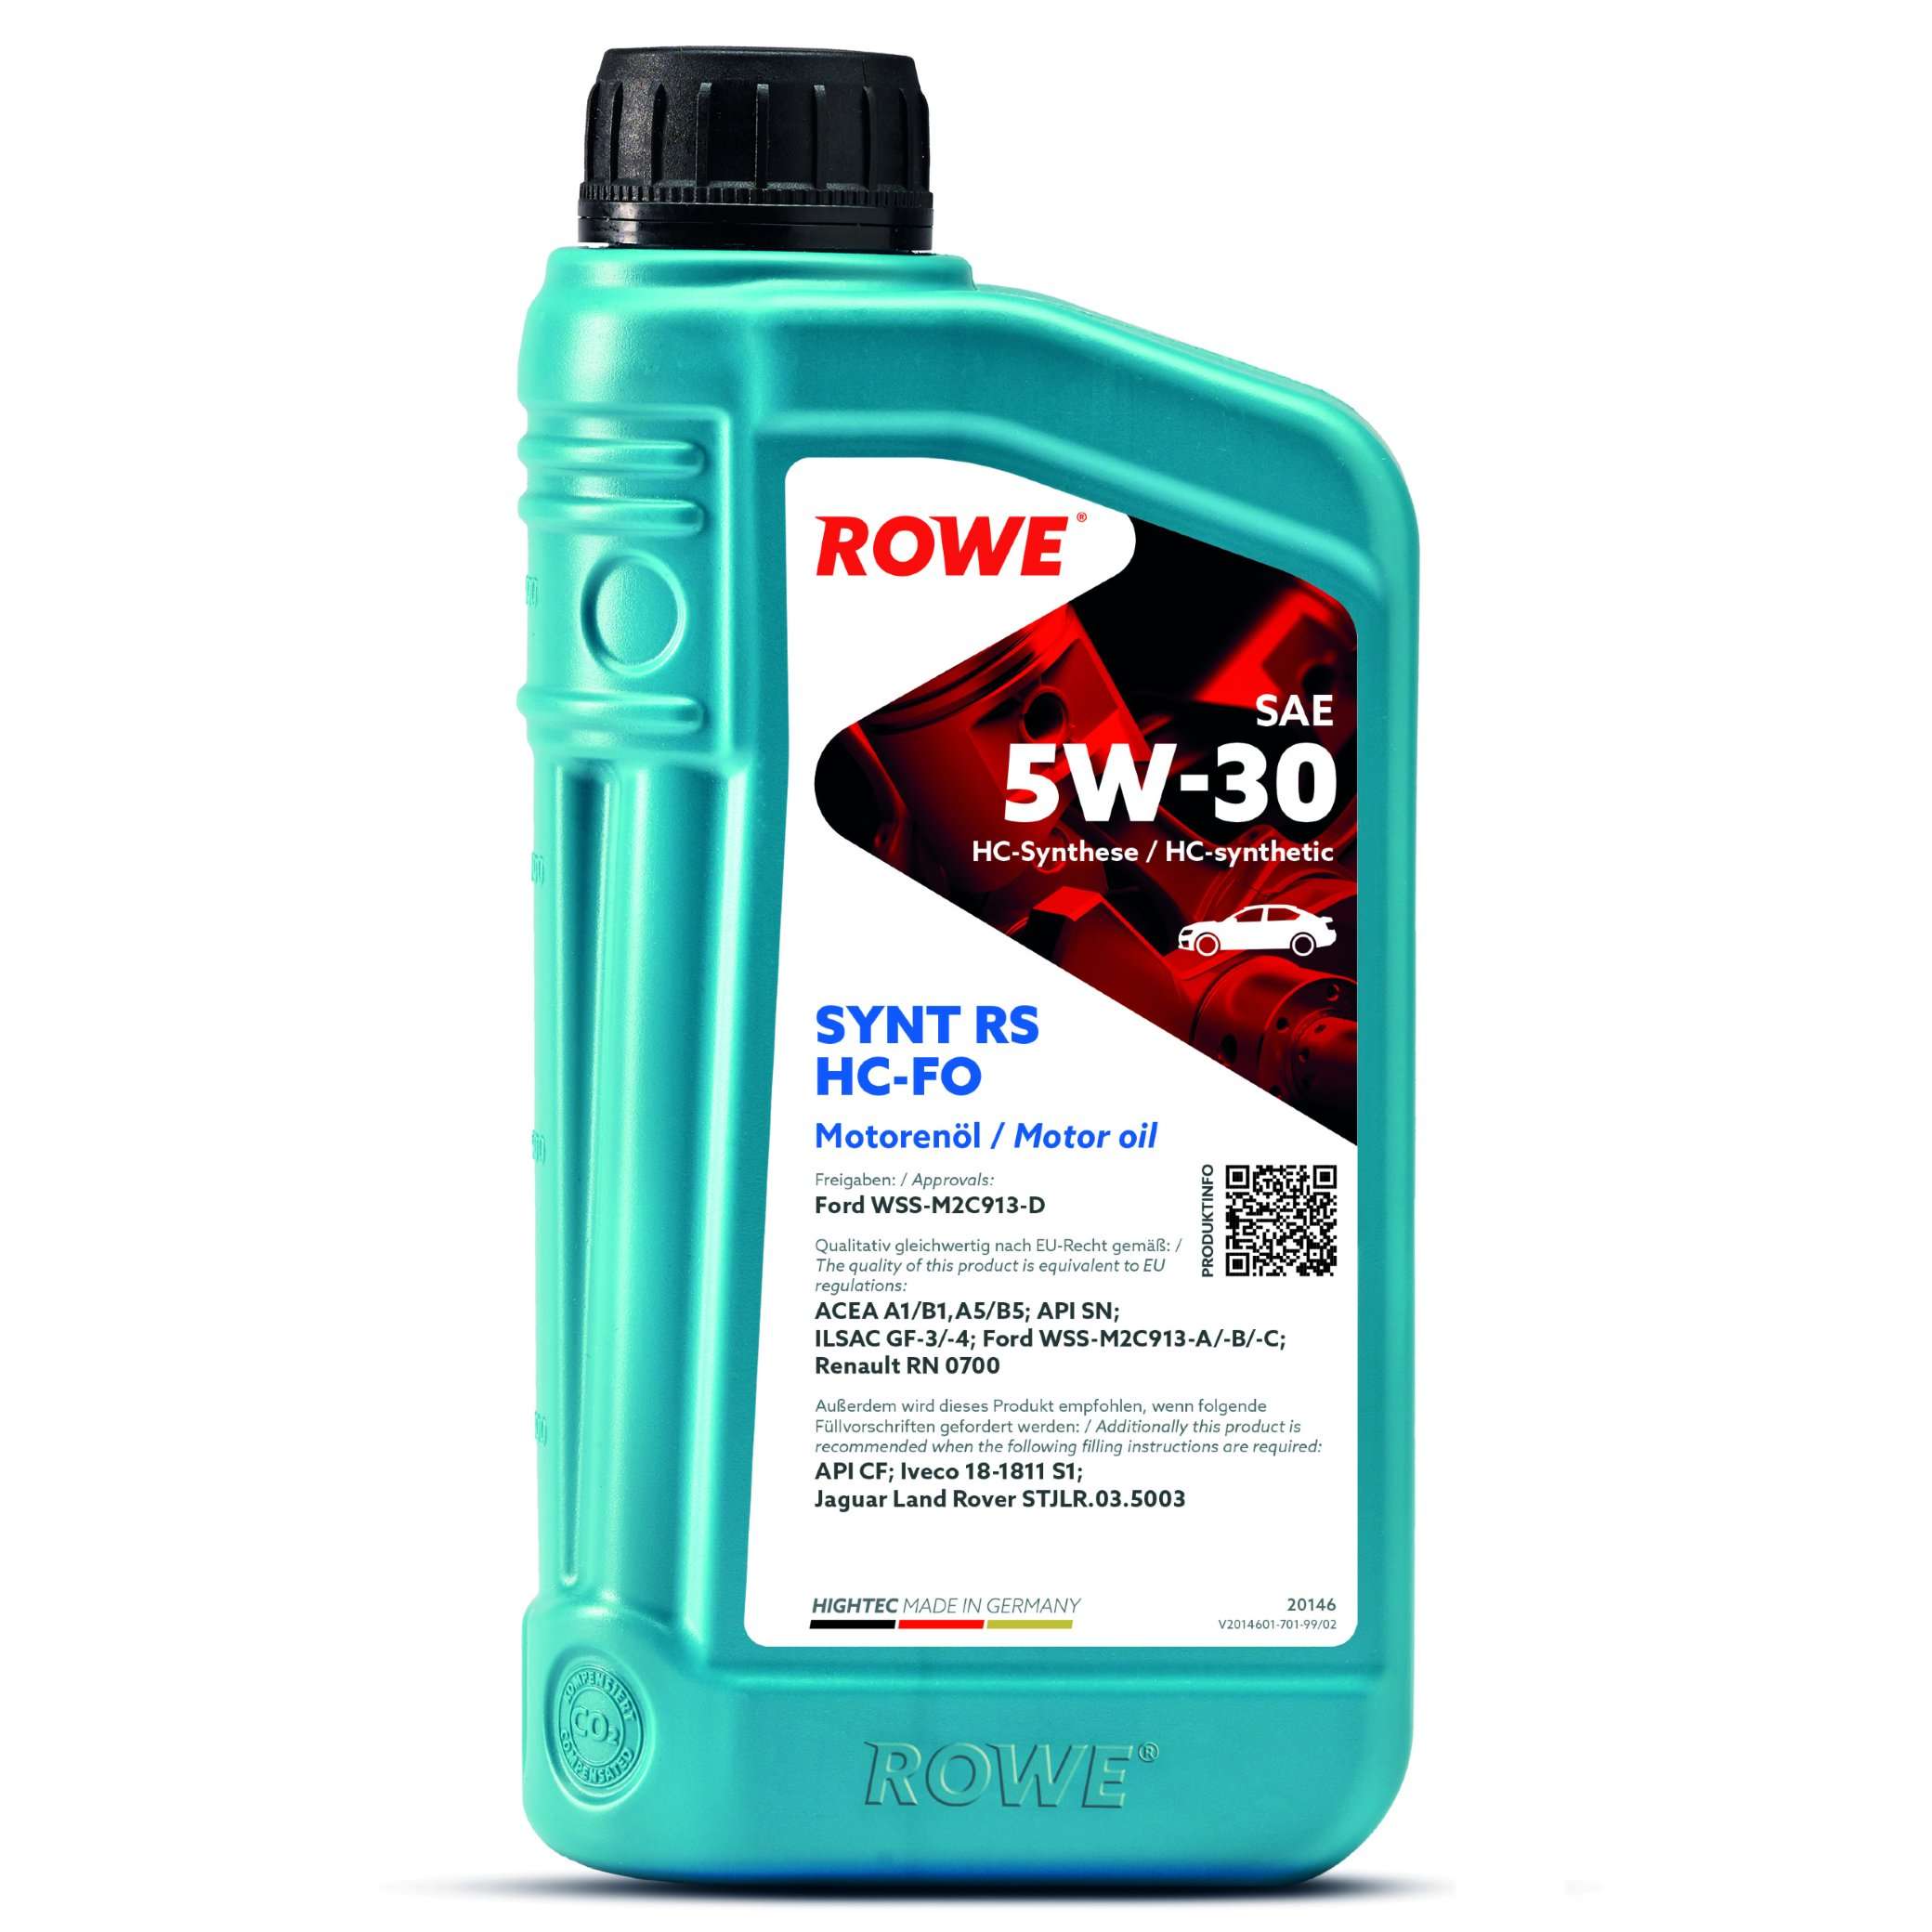 Моторна олива ROWE Synt RS HC-FO 5W-30 1 л, 20146-0010-99